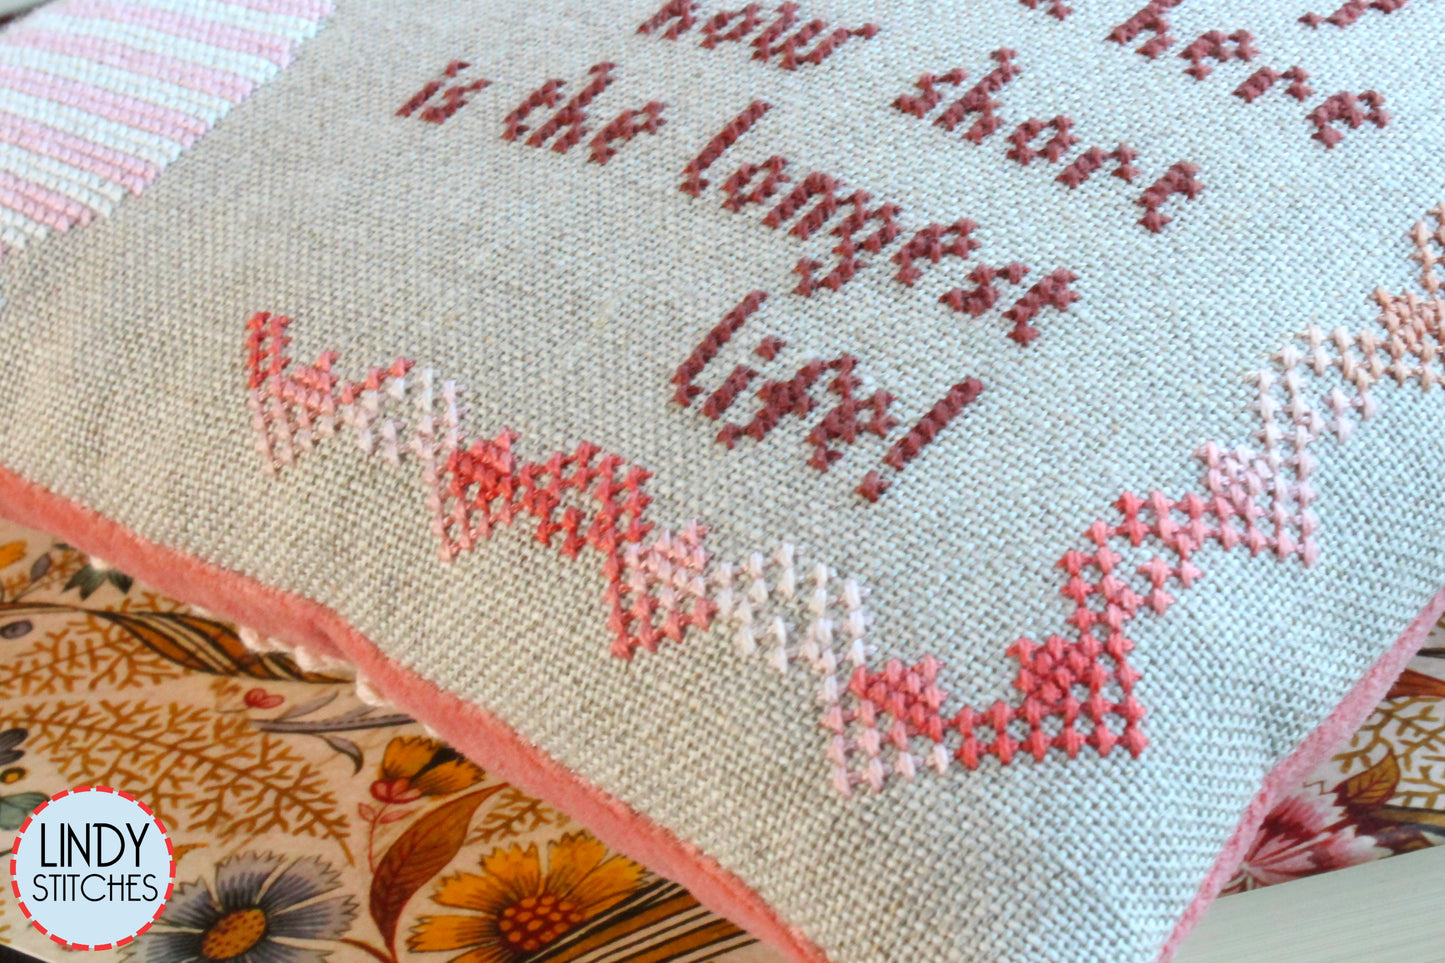 Wildflowers & Keats Cross Stitch Pattern by Lindy Stitches PDF